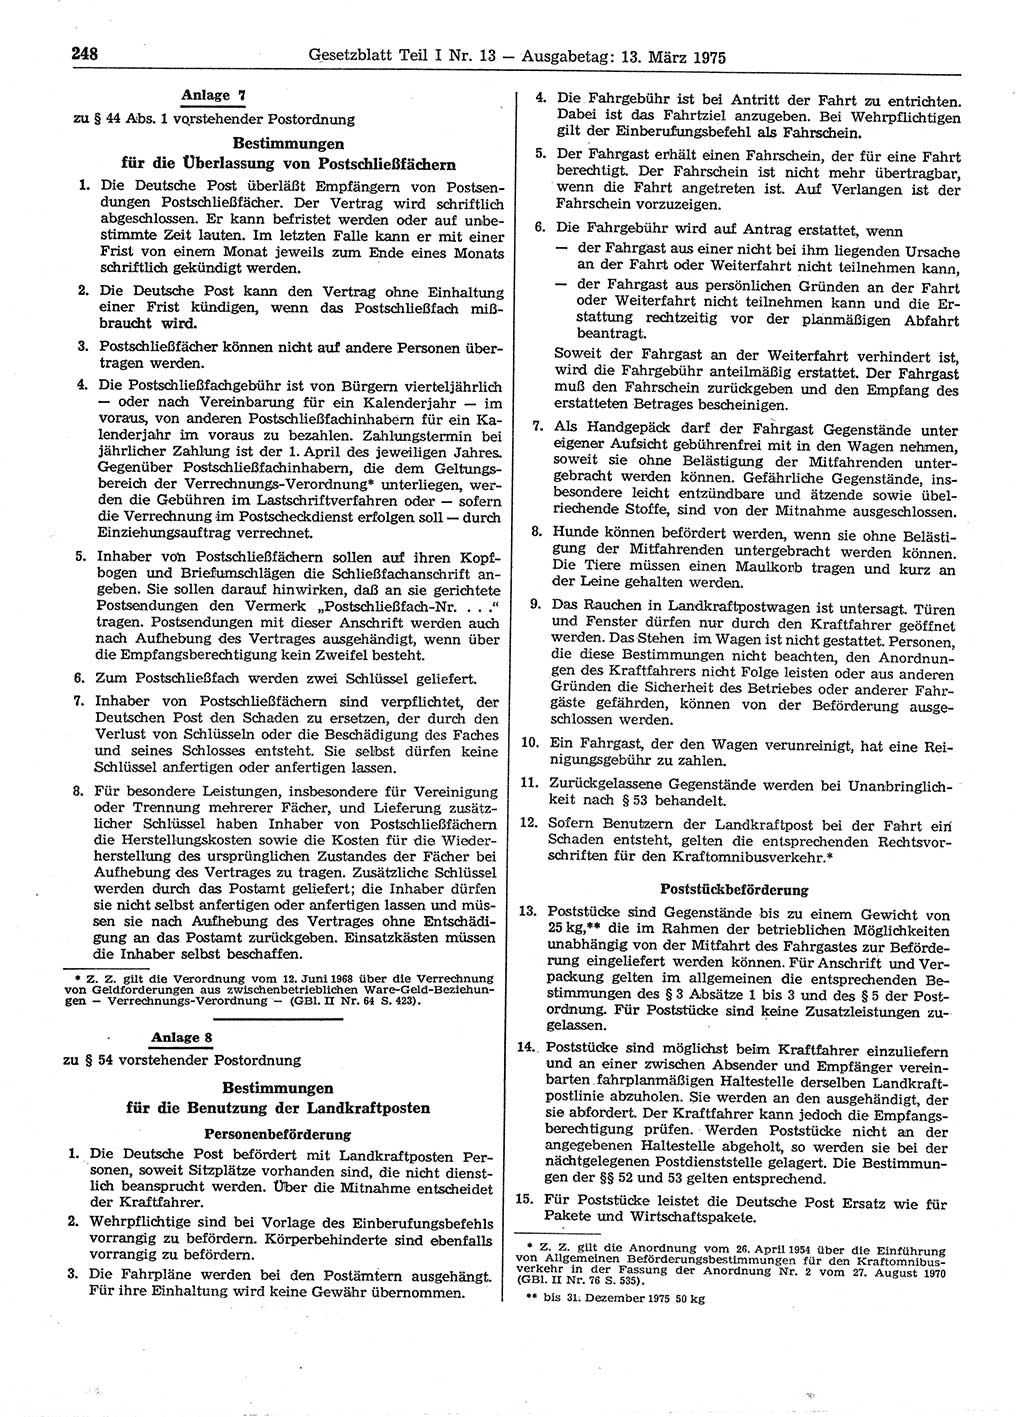 Gesetzblatt (GBl.) der Deutschen Demokratischen Republik (DDR) Teil Ⅰ 1975, Seite 248 (GBl. DDR Ⅰ 1975, S. 248)